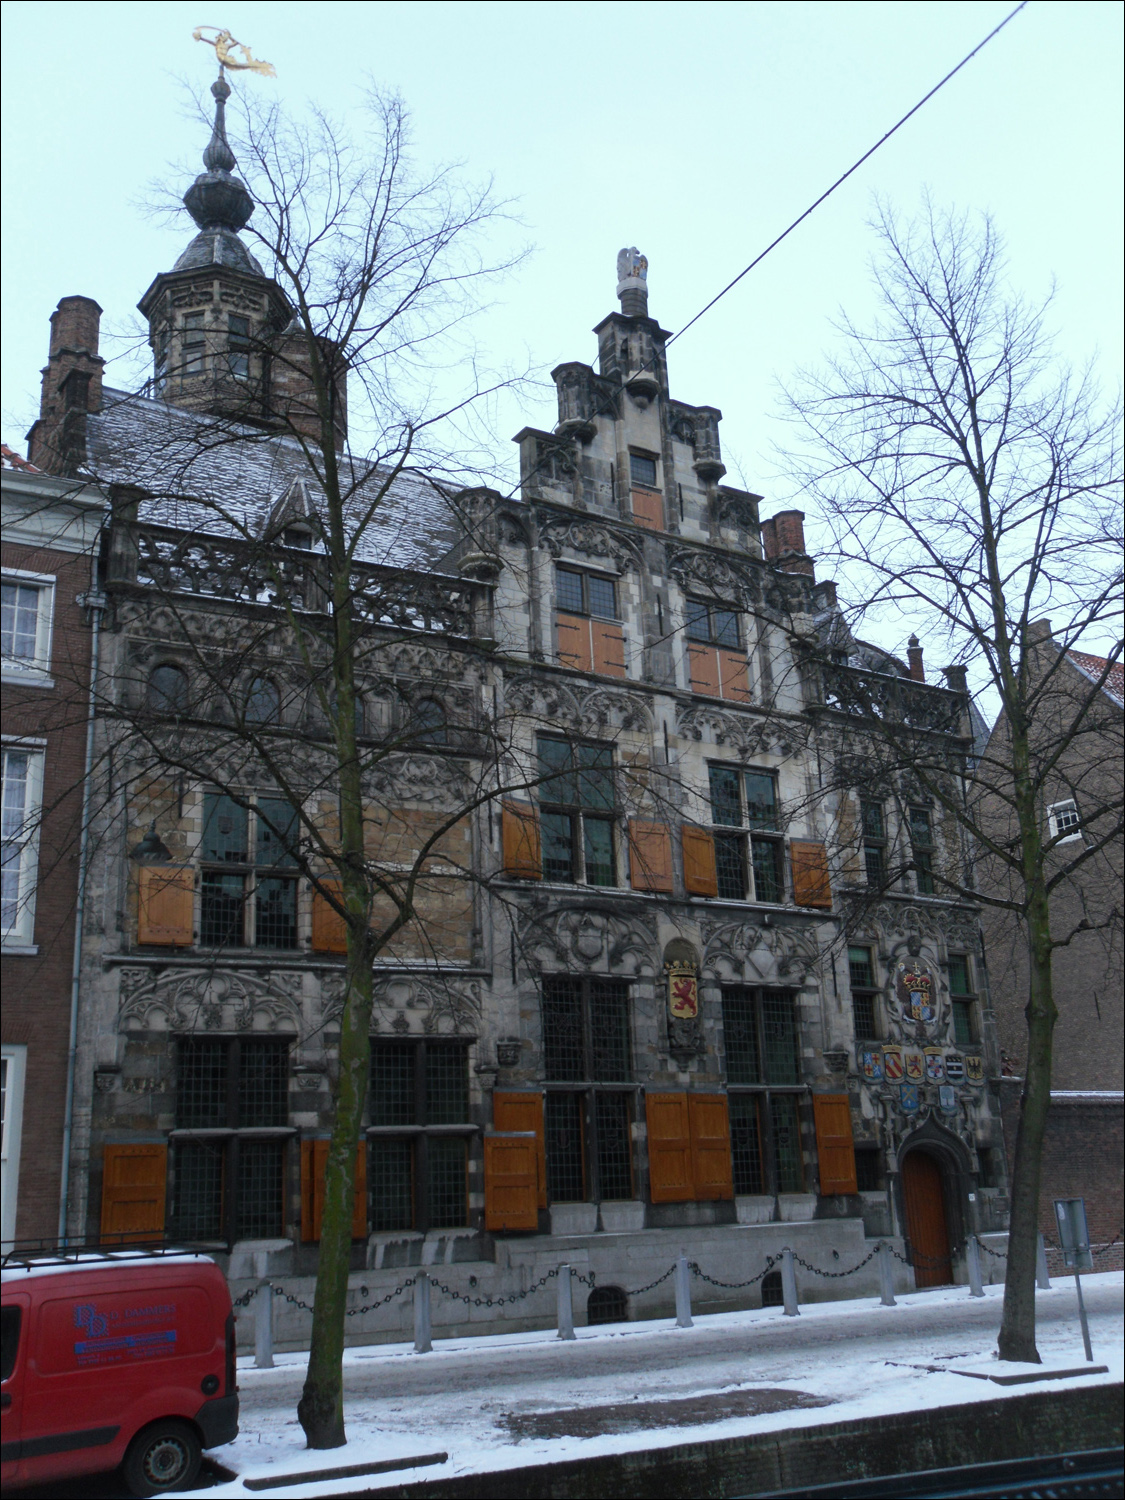 Waterworks building in Delft